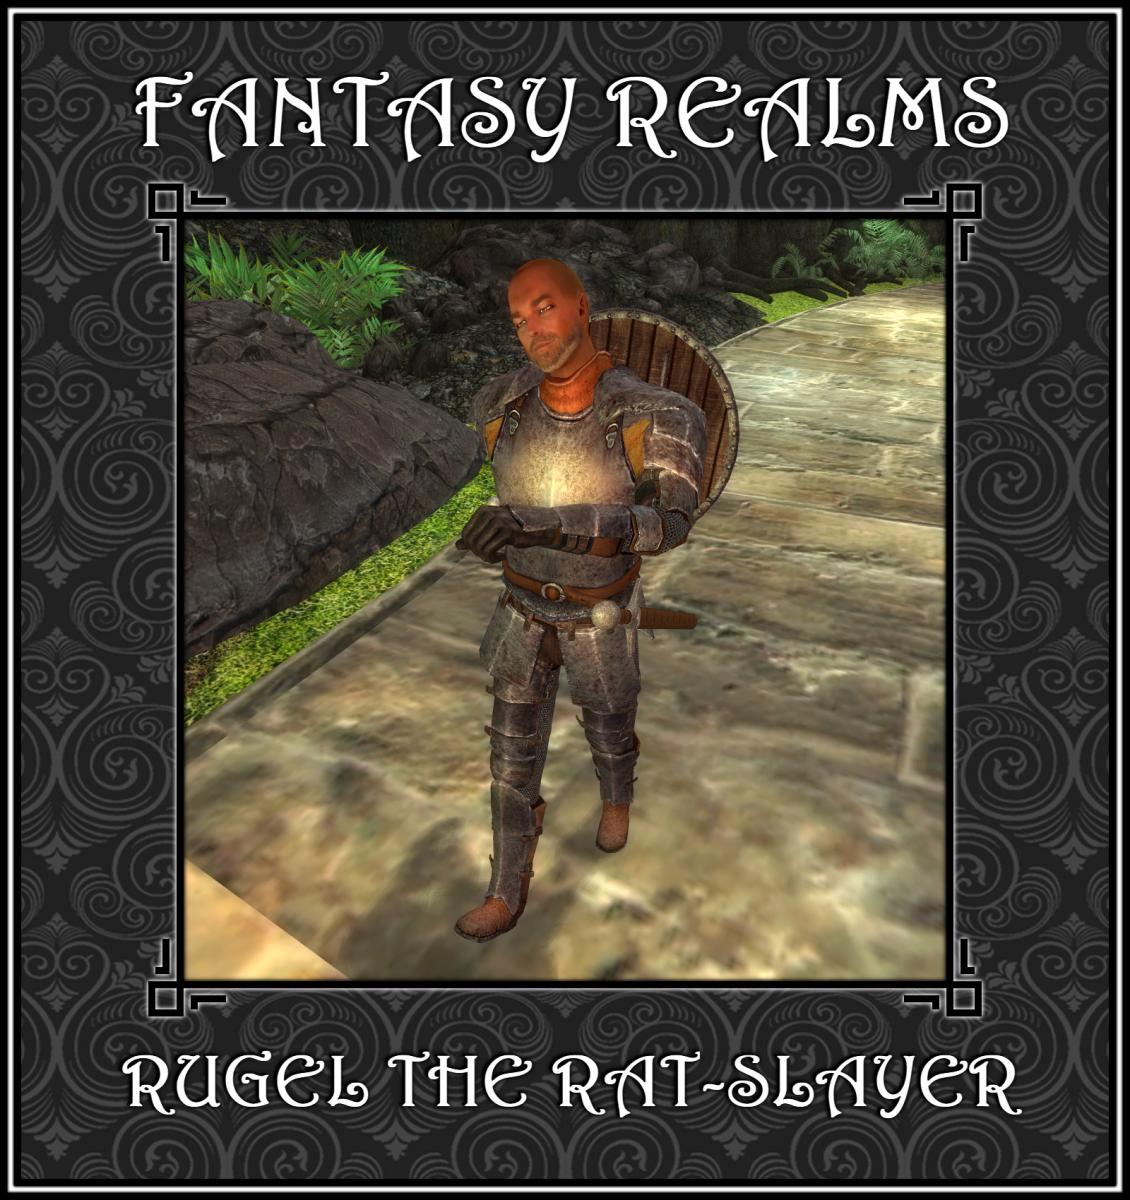 Rugel the Rat-Slayer